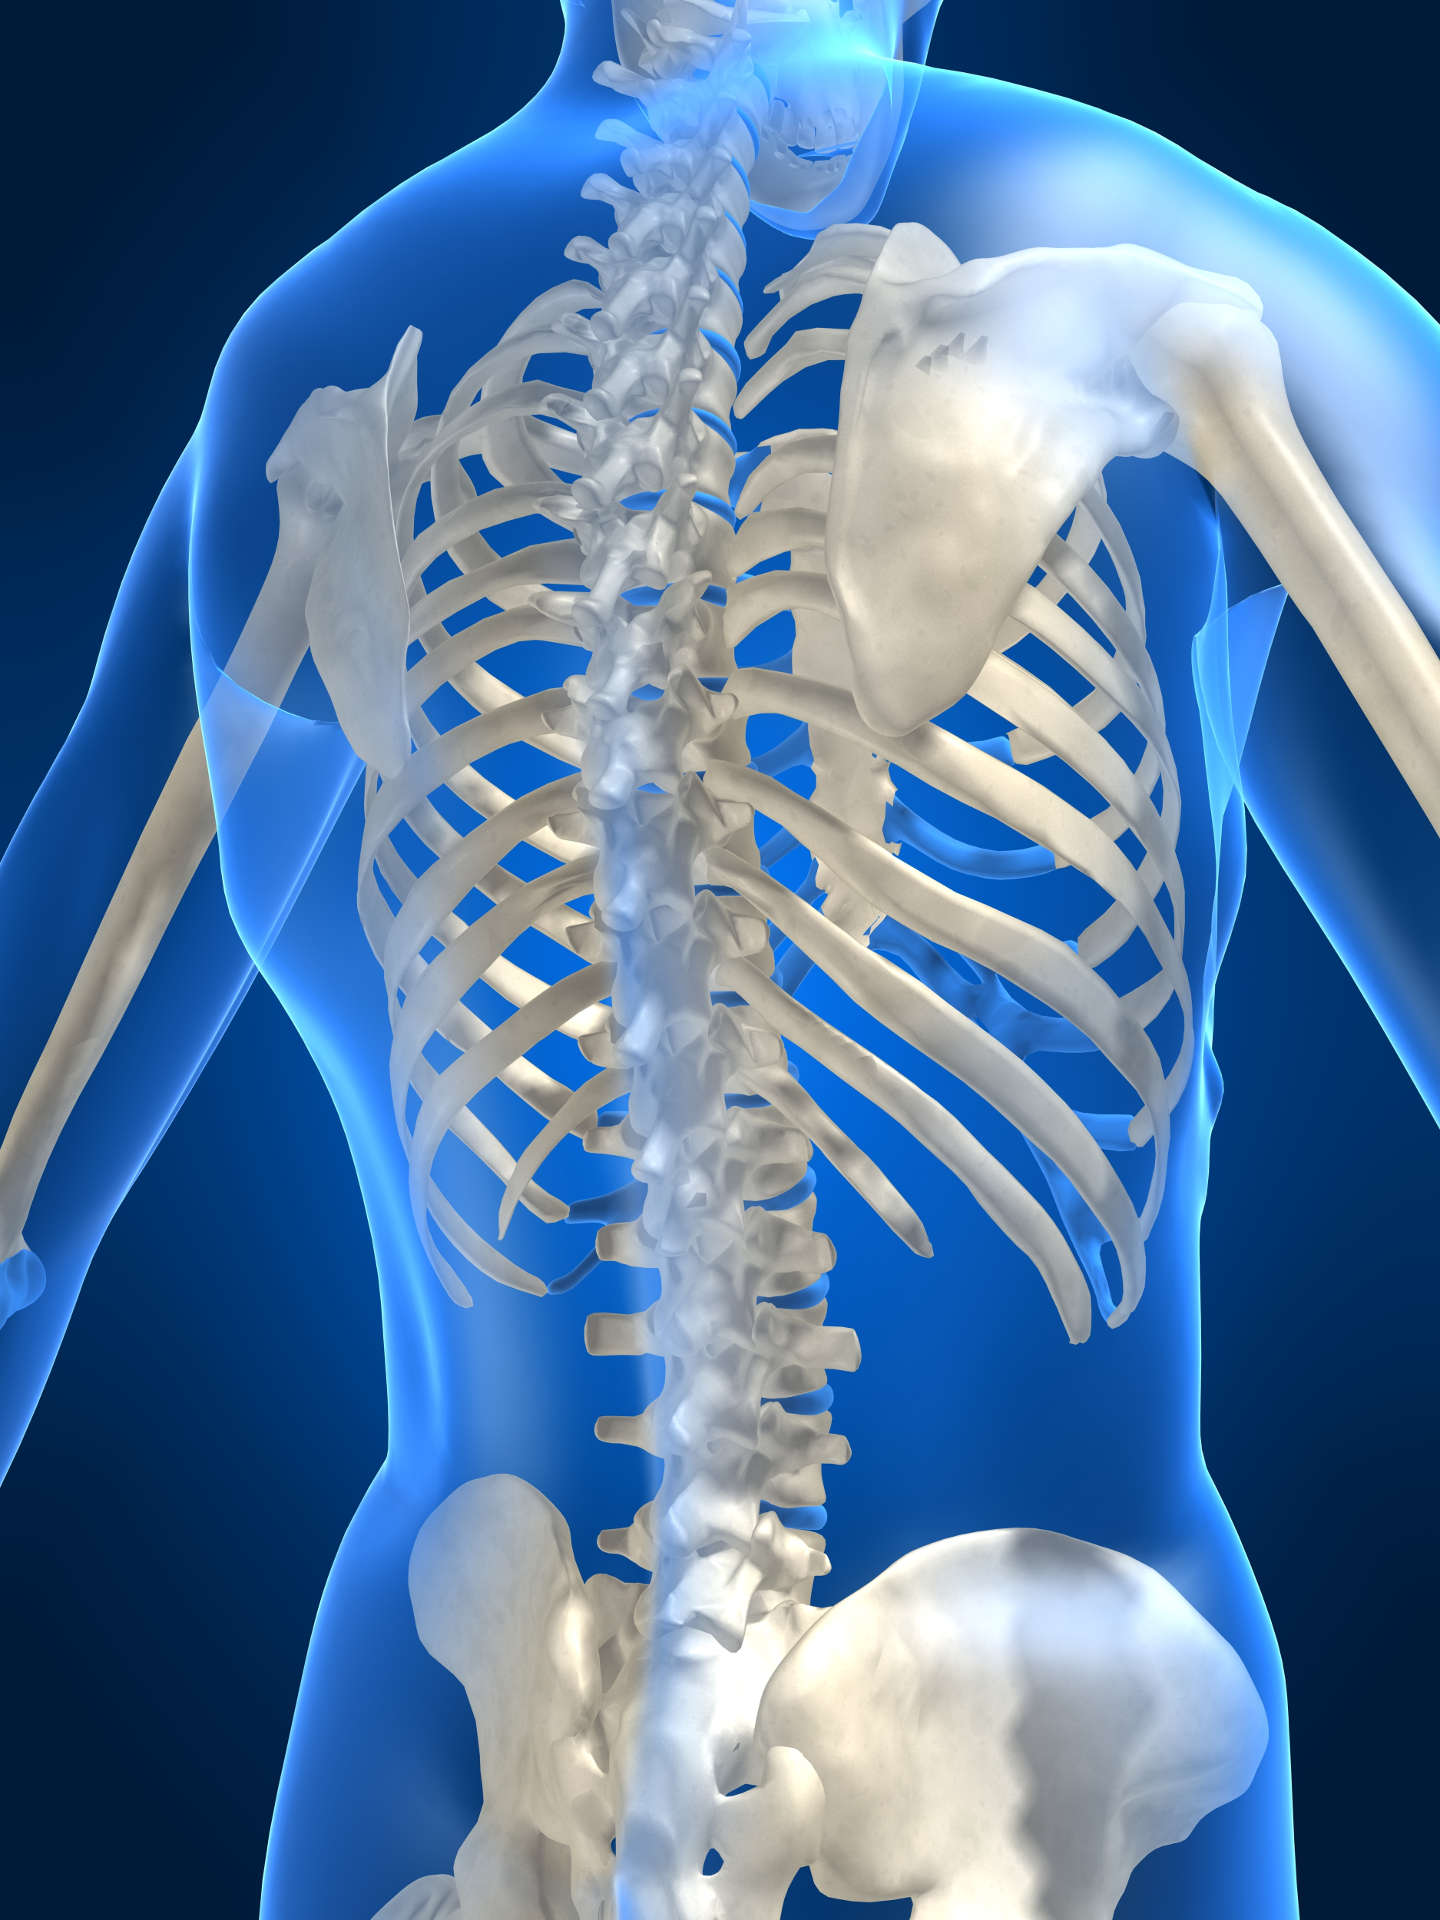 Do Chiropractors Put Bones Back in Place?